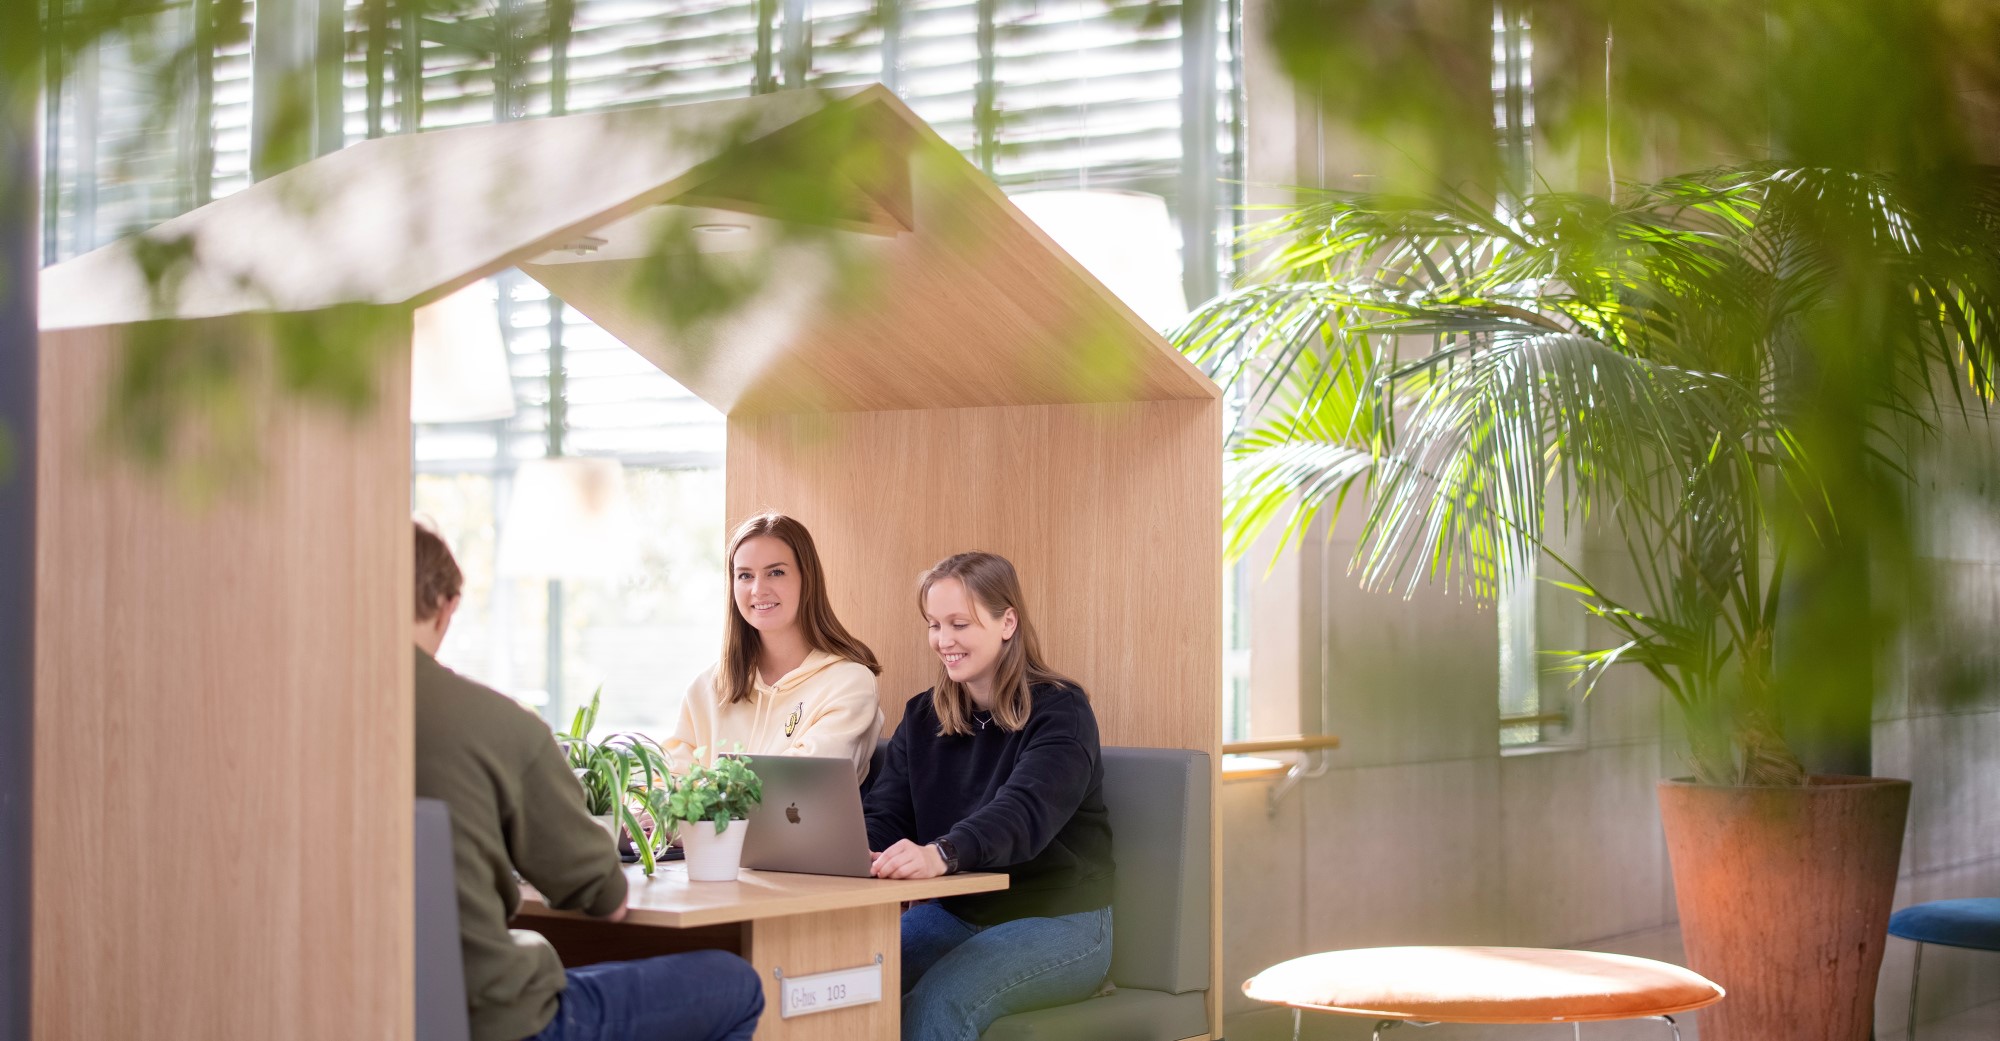 Studenter sitter ved bord og prater innendørs i grønne omgivelser